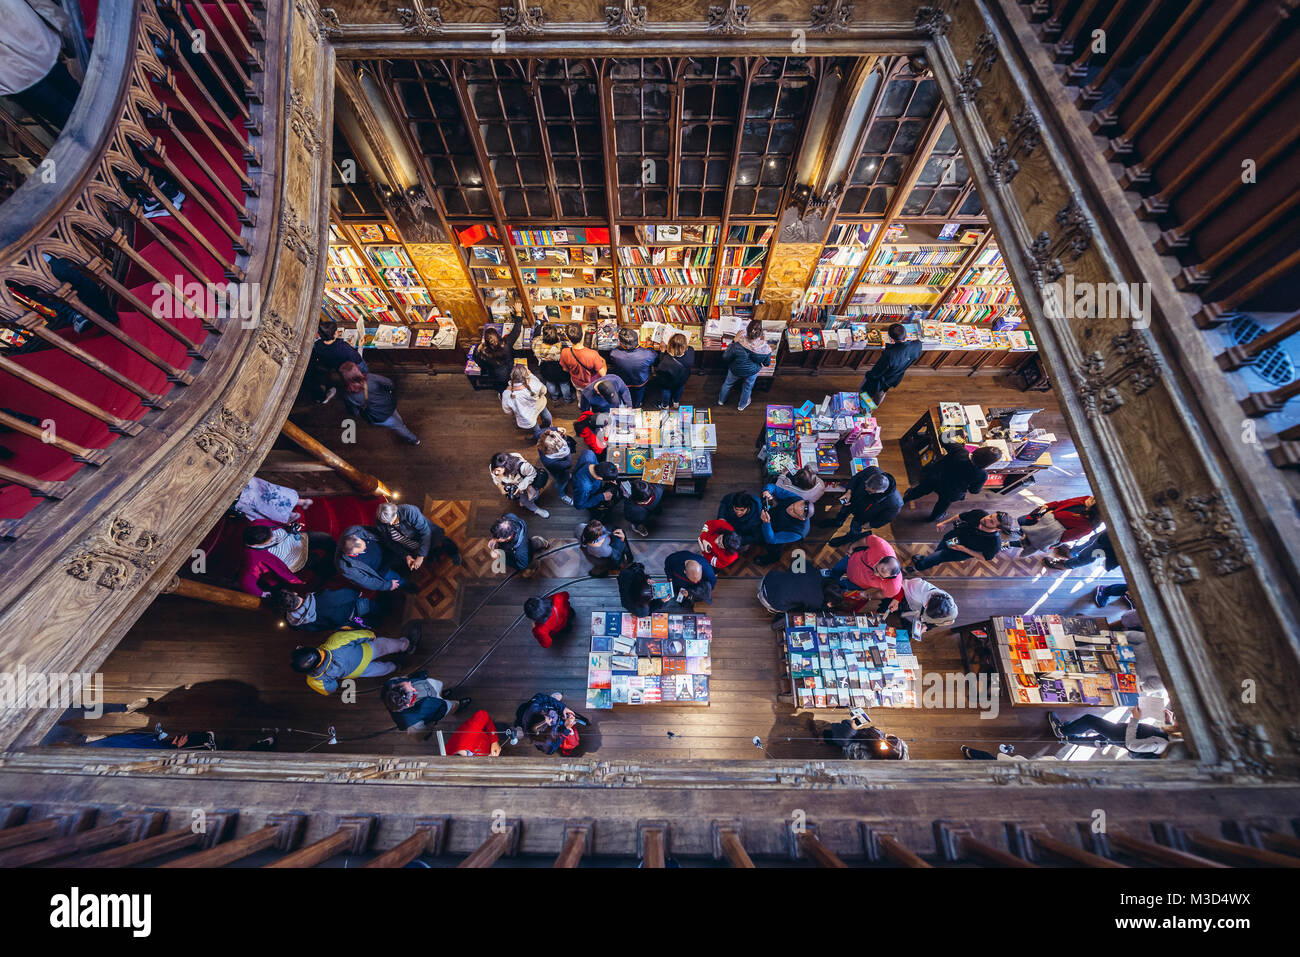 Les visiteurs dans l'une des plus célèbres librairies dans le monde entier, la Livraria Lello dans la ville de Porto au Portugal Banque D'Images